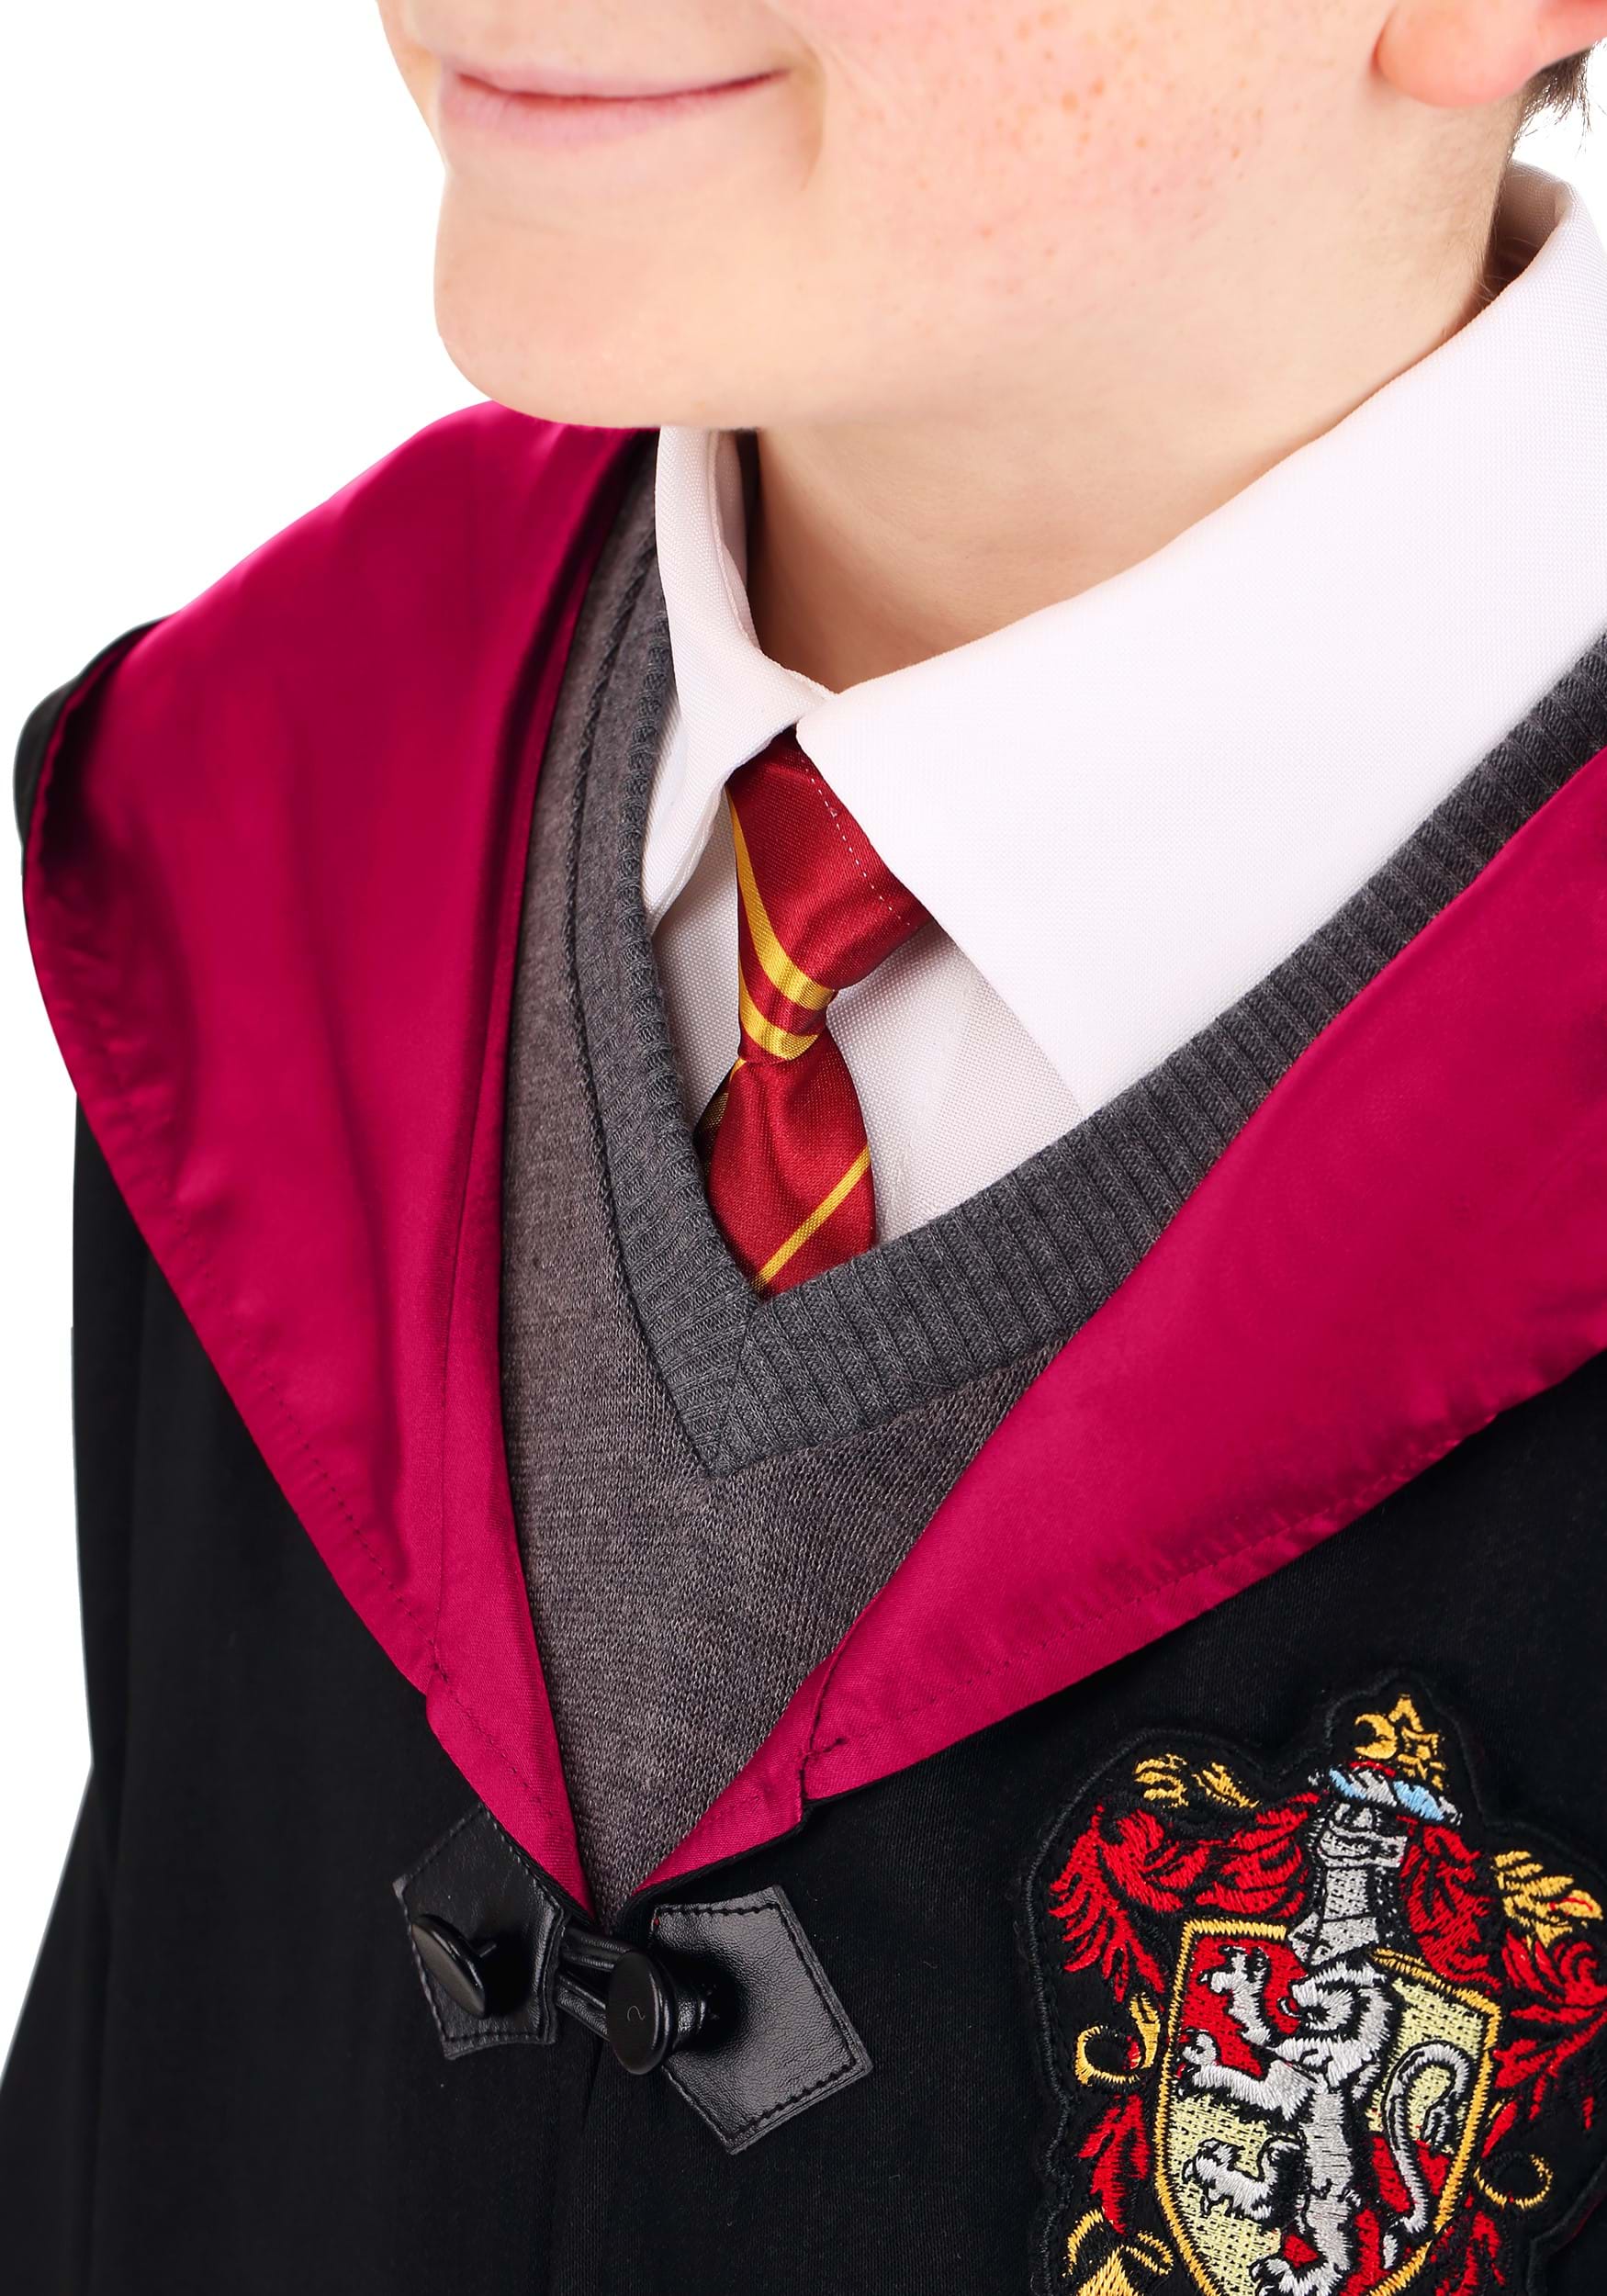 Deluxe Kid's Harry Potter Costume